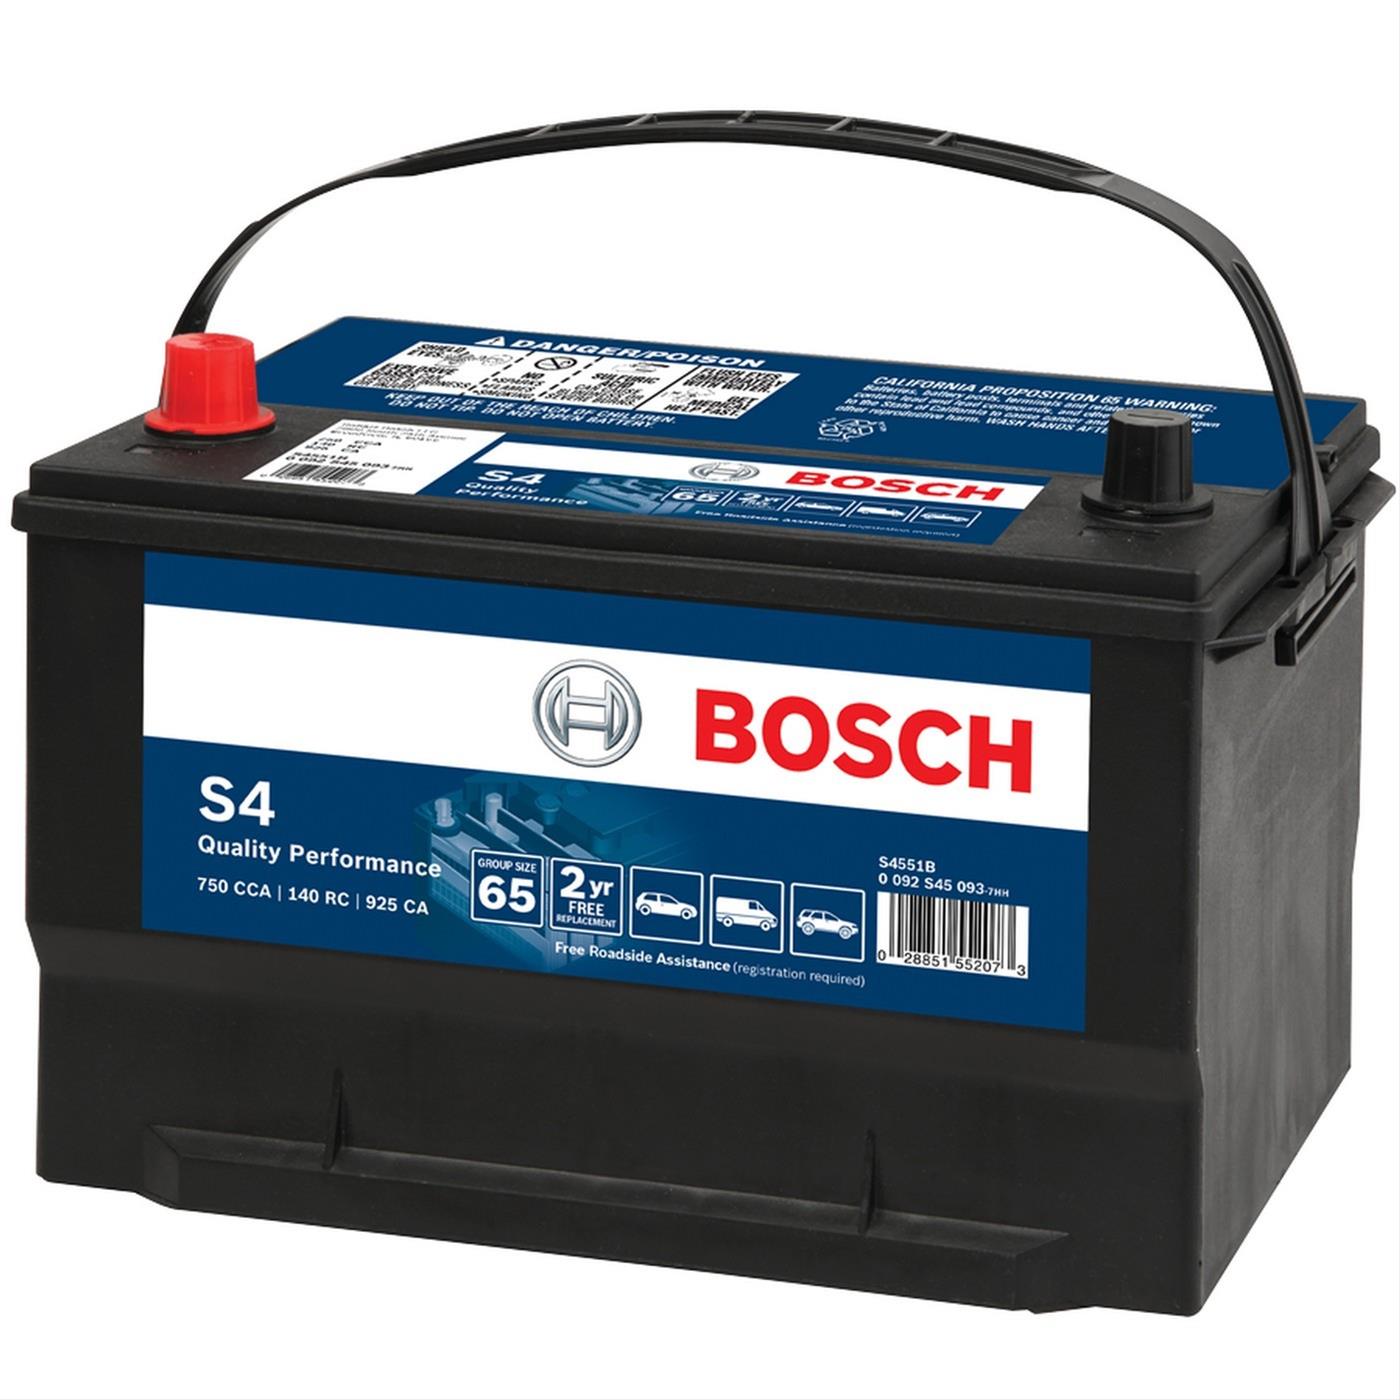 Bosch car battery finder uk